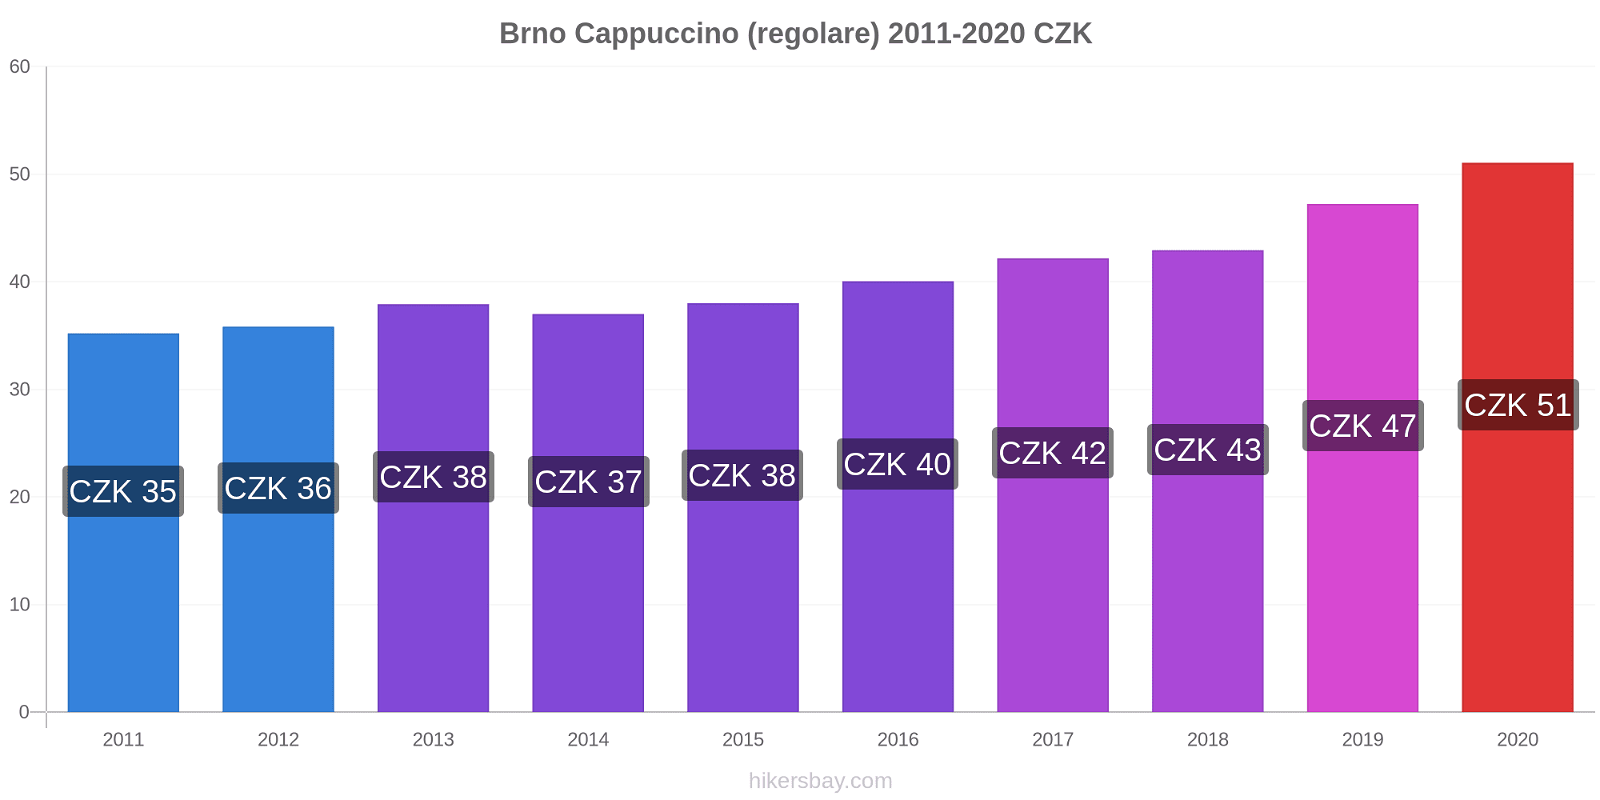 Brno variazioni di prezzo Cappuccino (normale) hikersbay.com